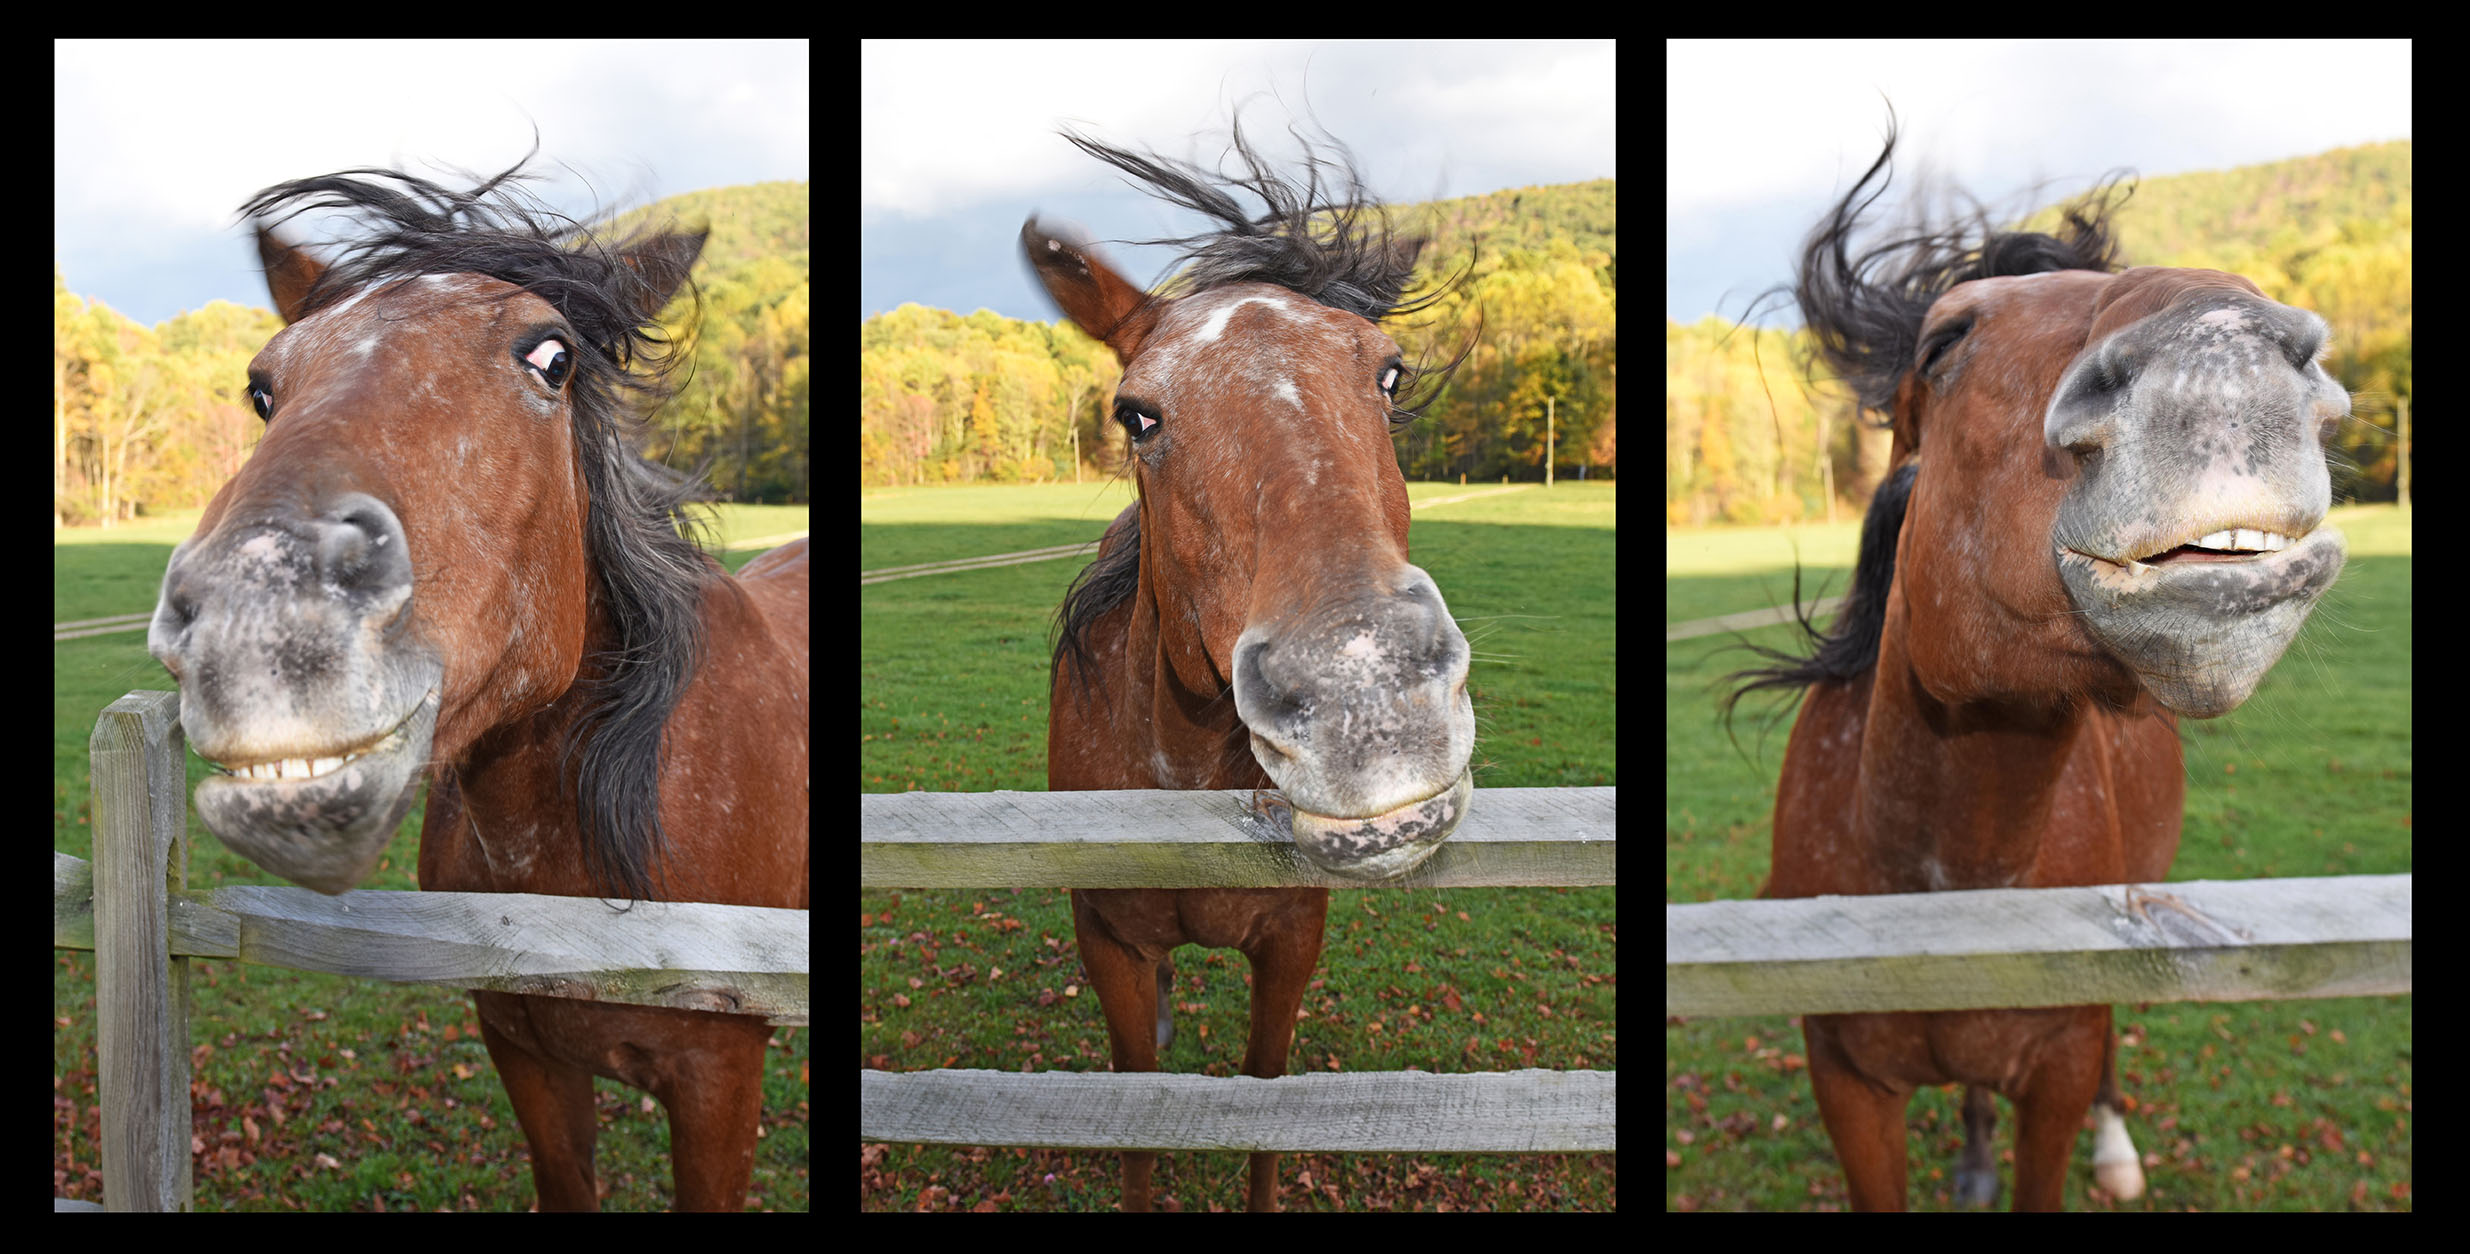 Horse_Farm_Funny_Faces_Split_Rail_Fence_Humor_Triptych_Nelson_County_Virginia.jpg